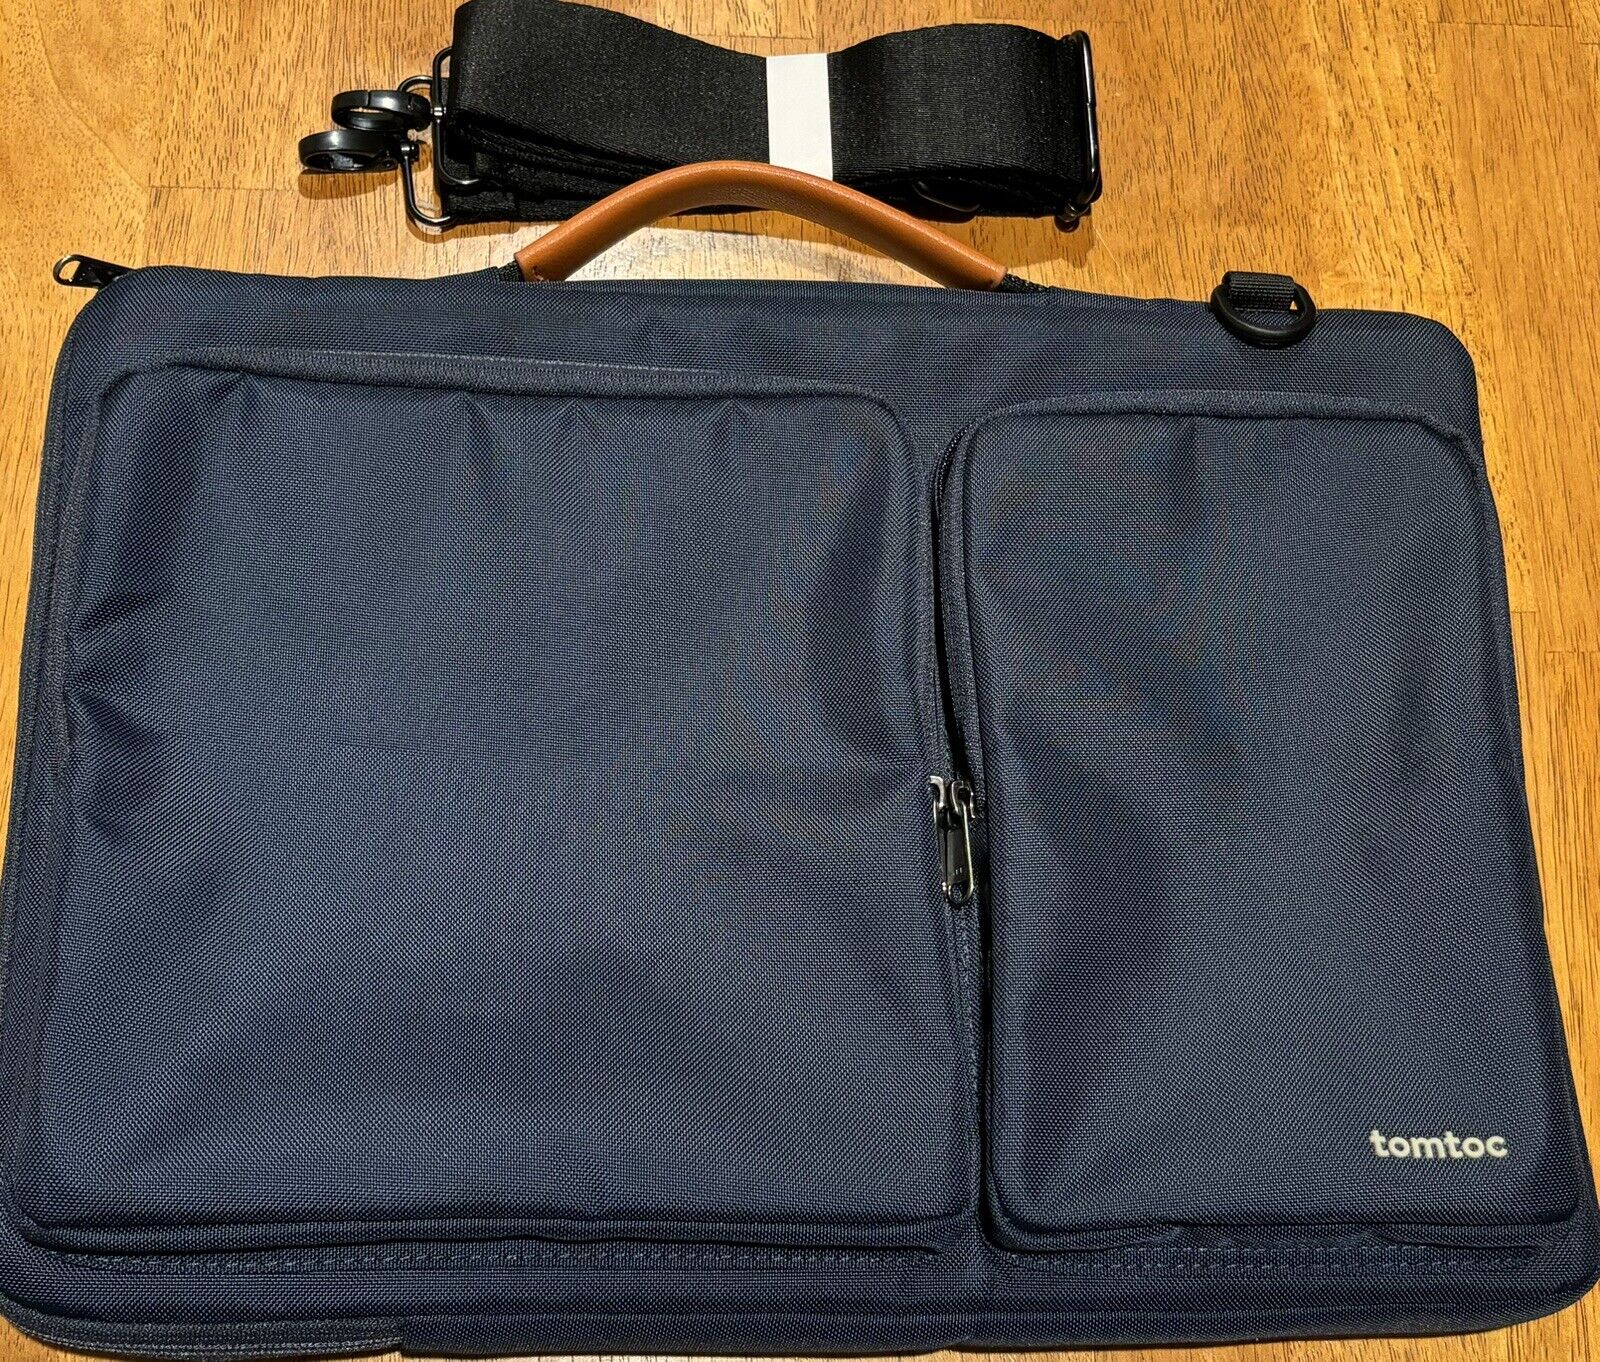 tomtoc Defender-A42 Laptop Shoulder Bag